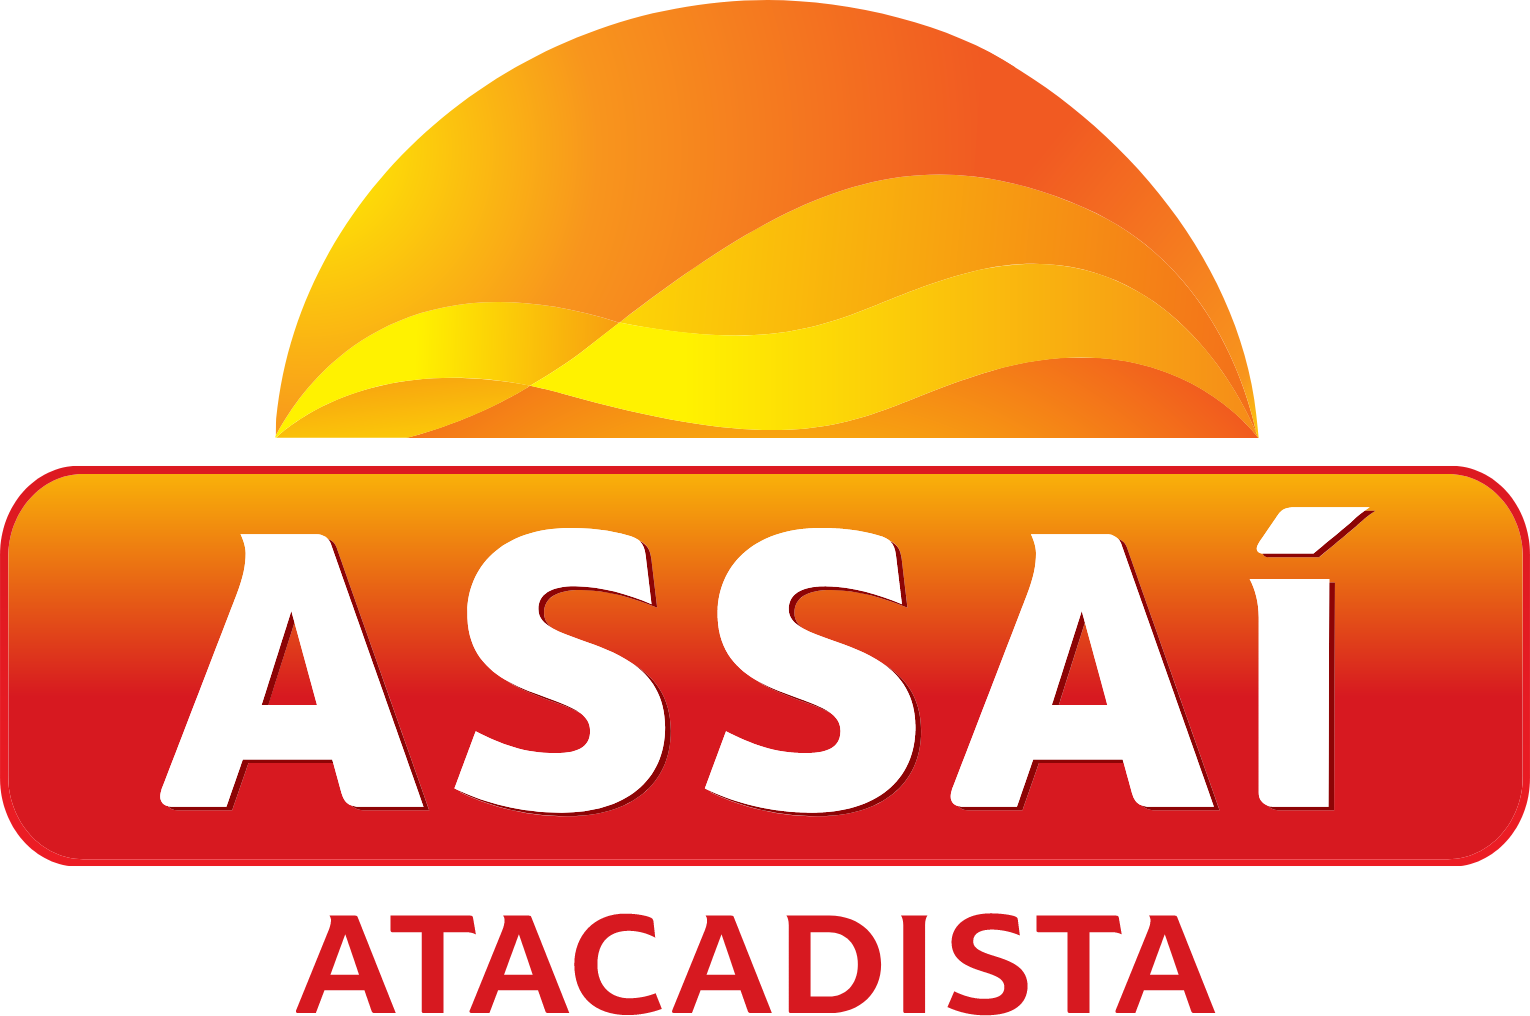 Assaí Atacadista
 logo large (transparent PNG)